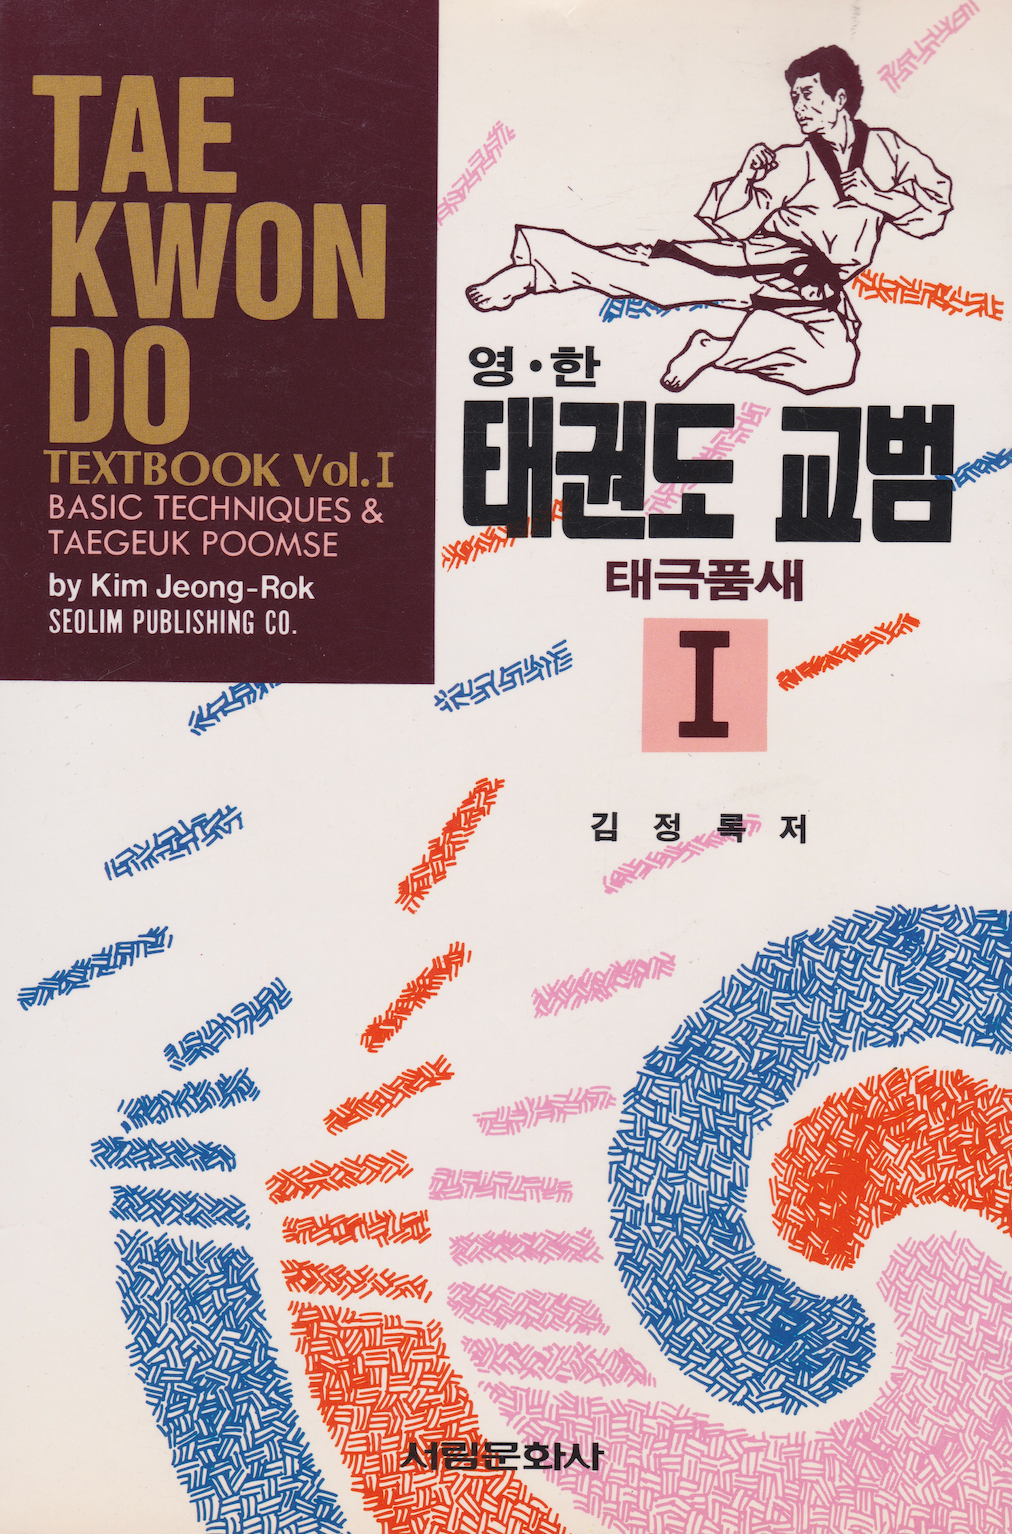 Libro de texto de Tae Kwon Do Vol 1 de Kim Jeong-Rok (usado)